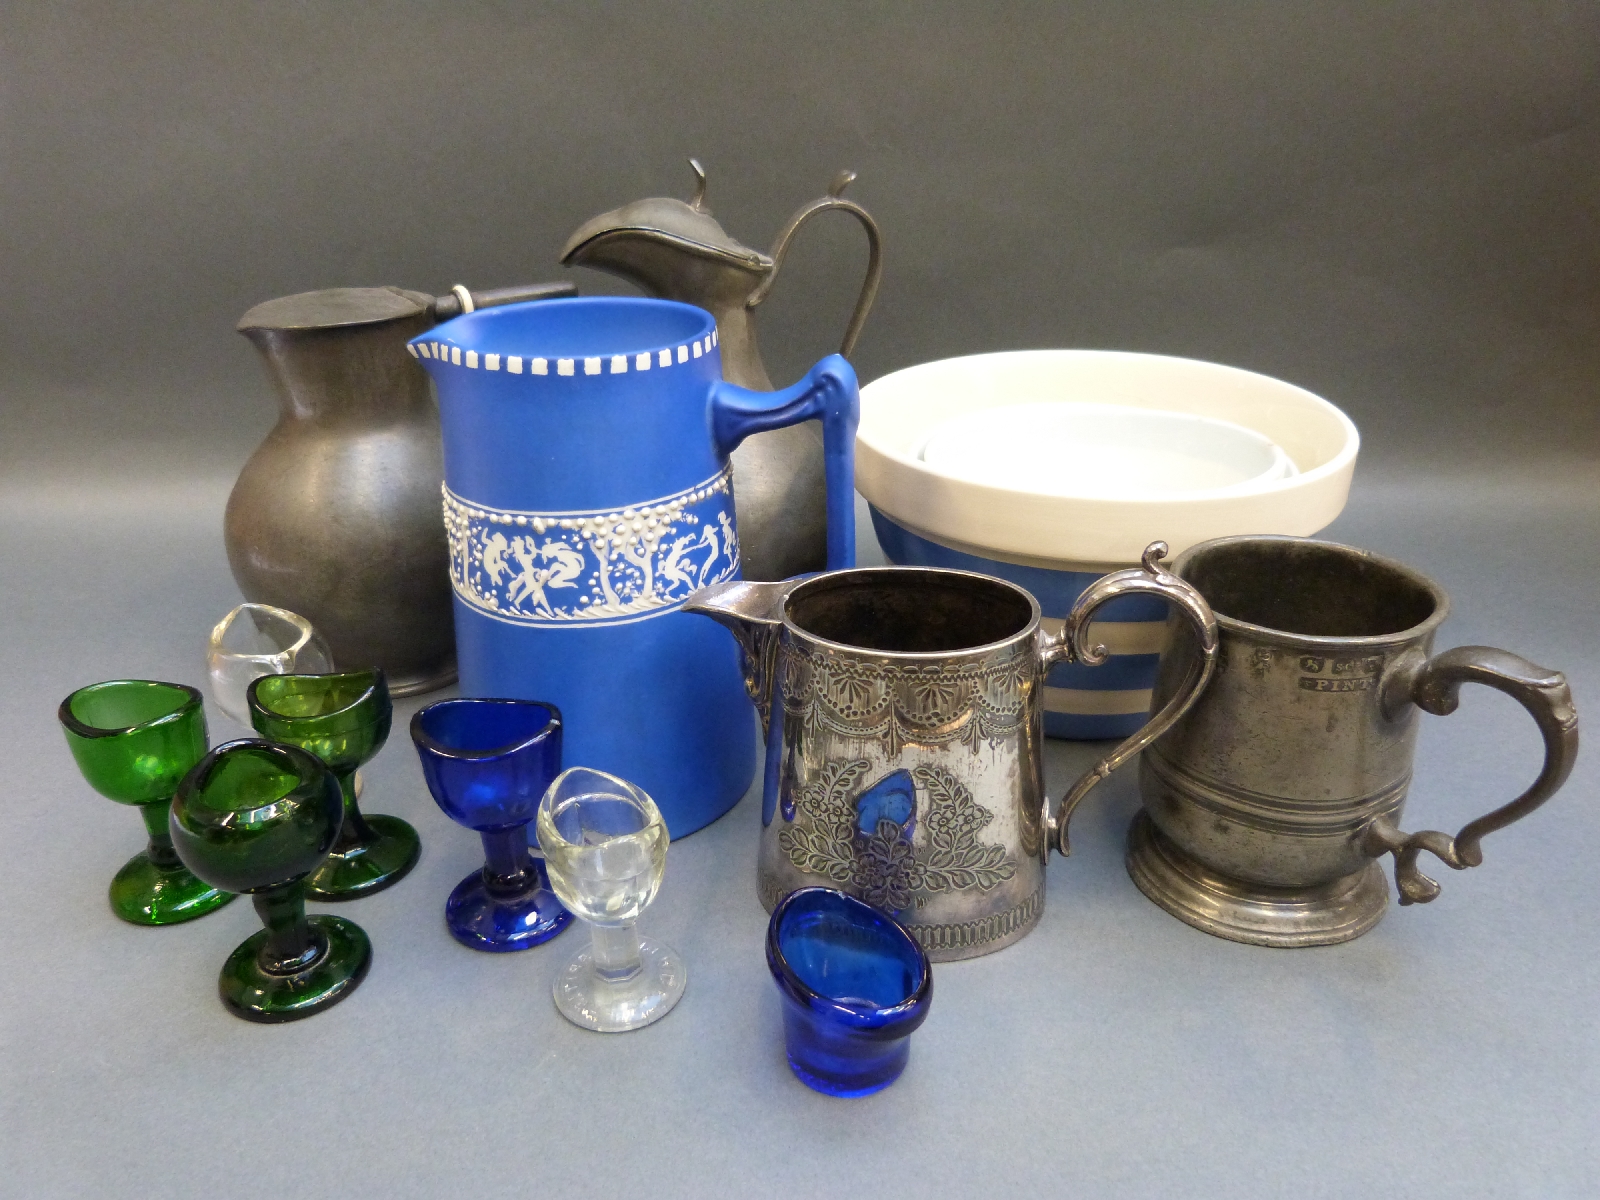 T G Green bowls, Tams jug, pewter items,